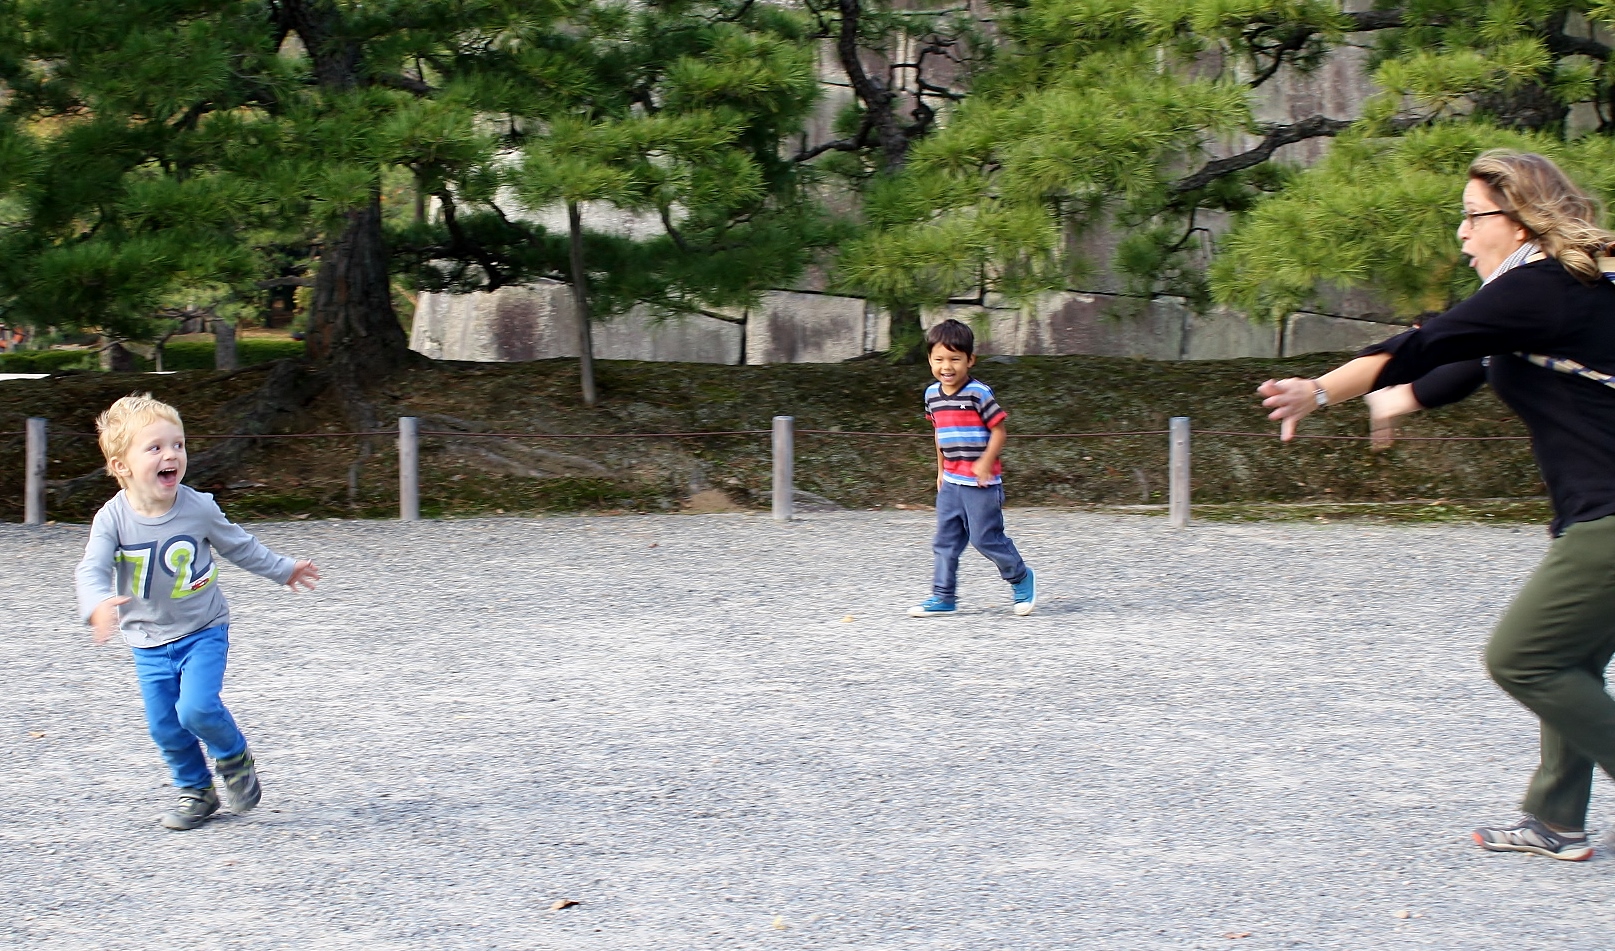 Playing chase at Nijo-jo Kyoto